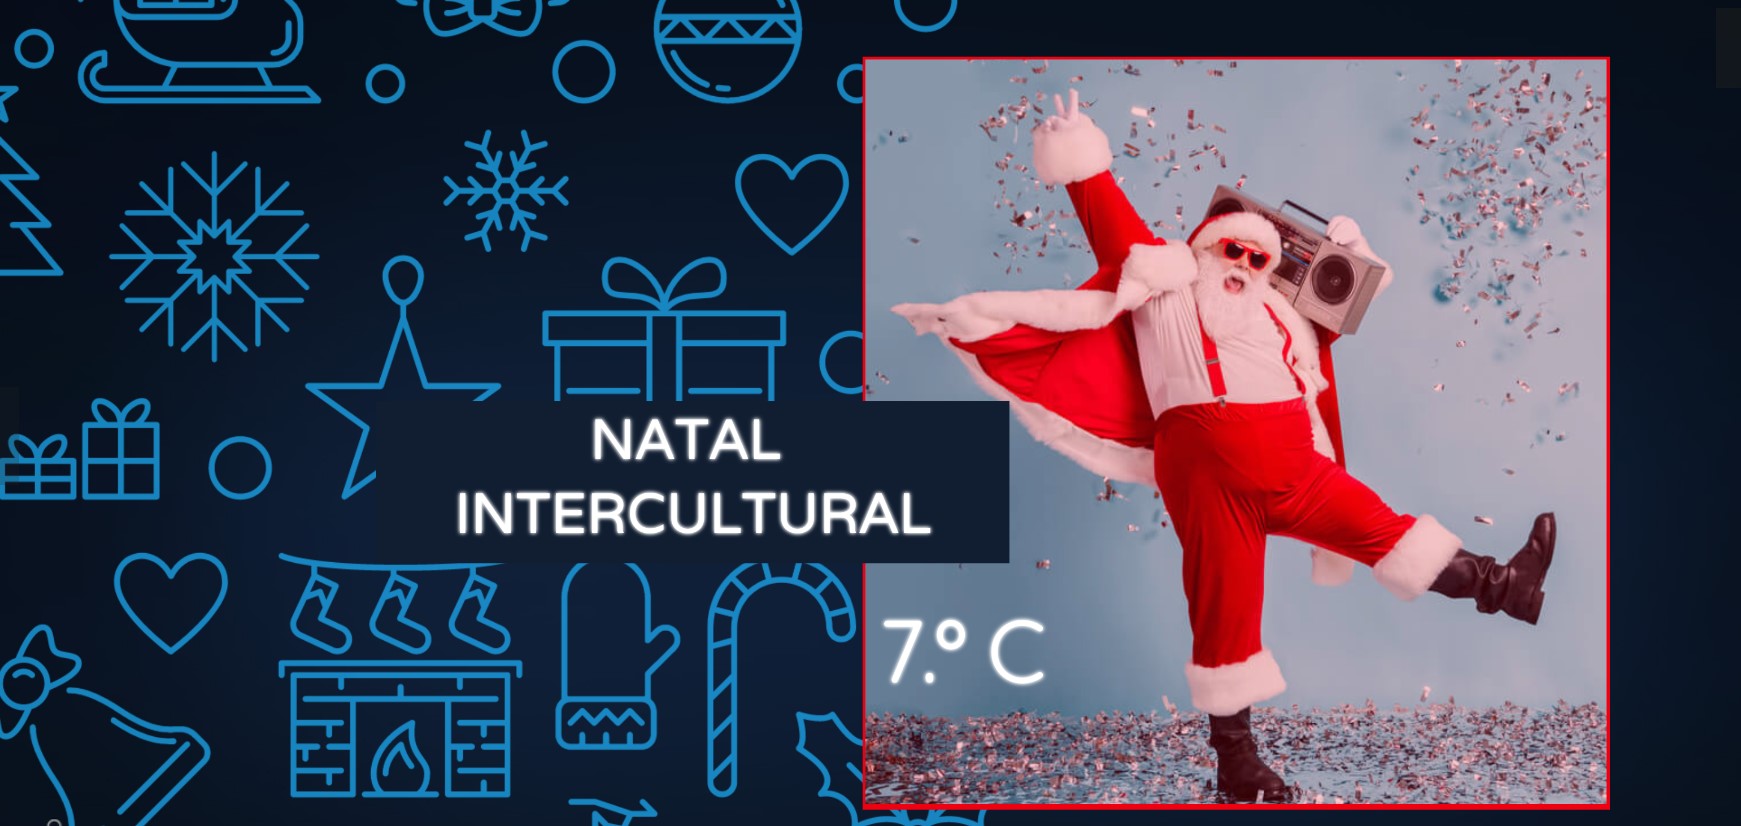 Natal intercultural 7.ºC